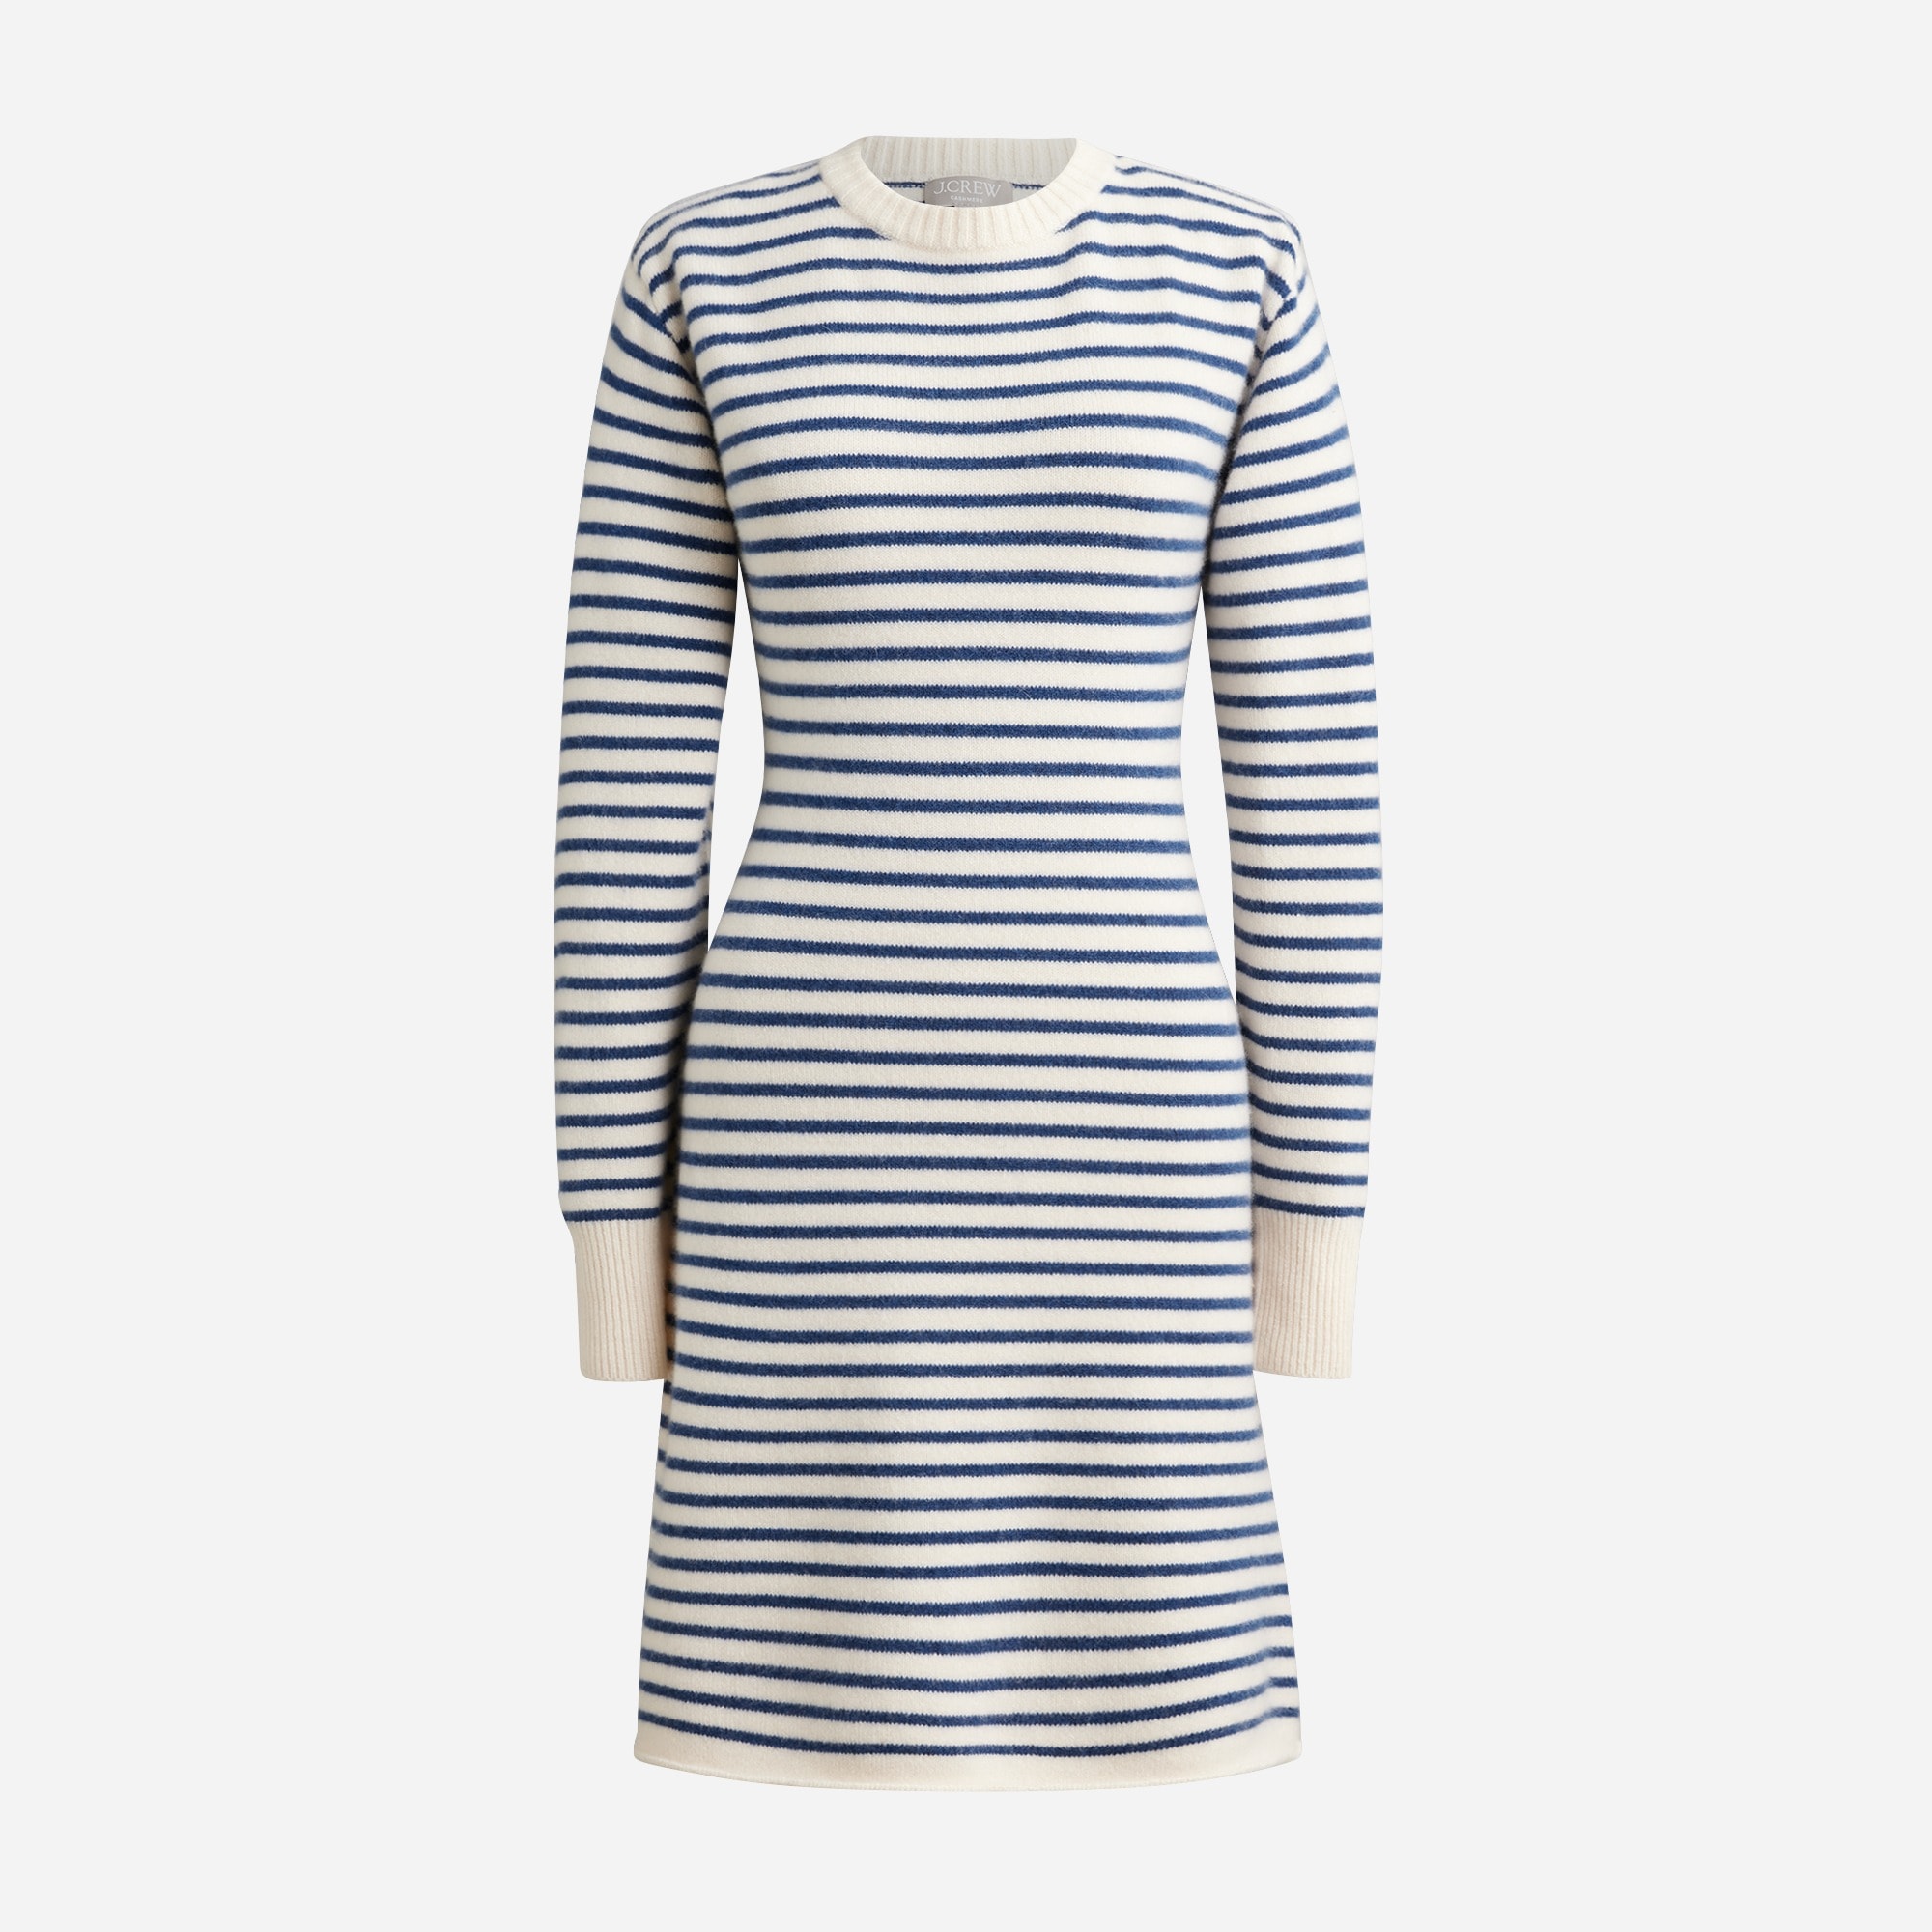  Cashmere sweater-dress in stripe